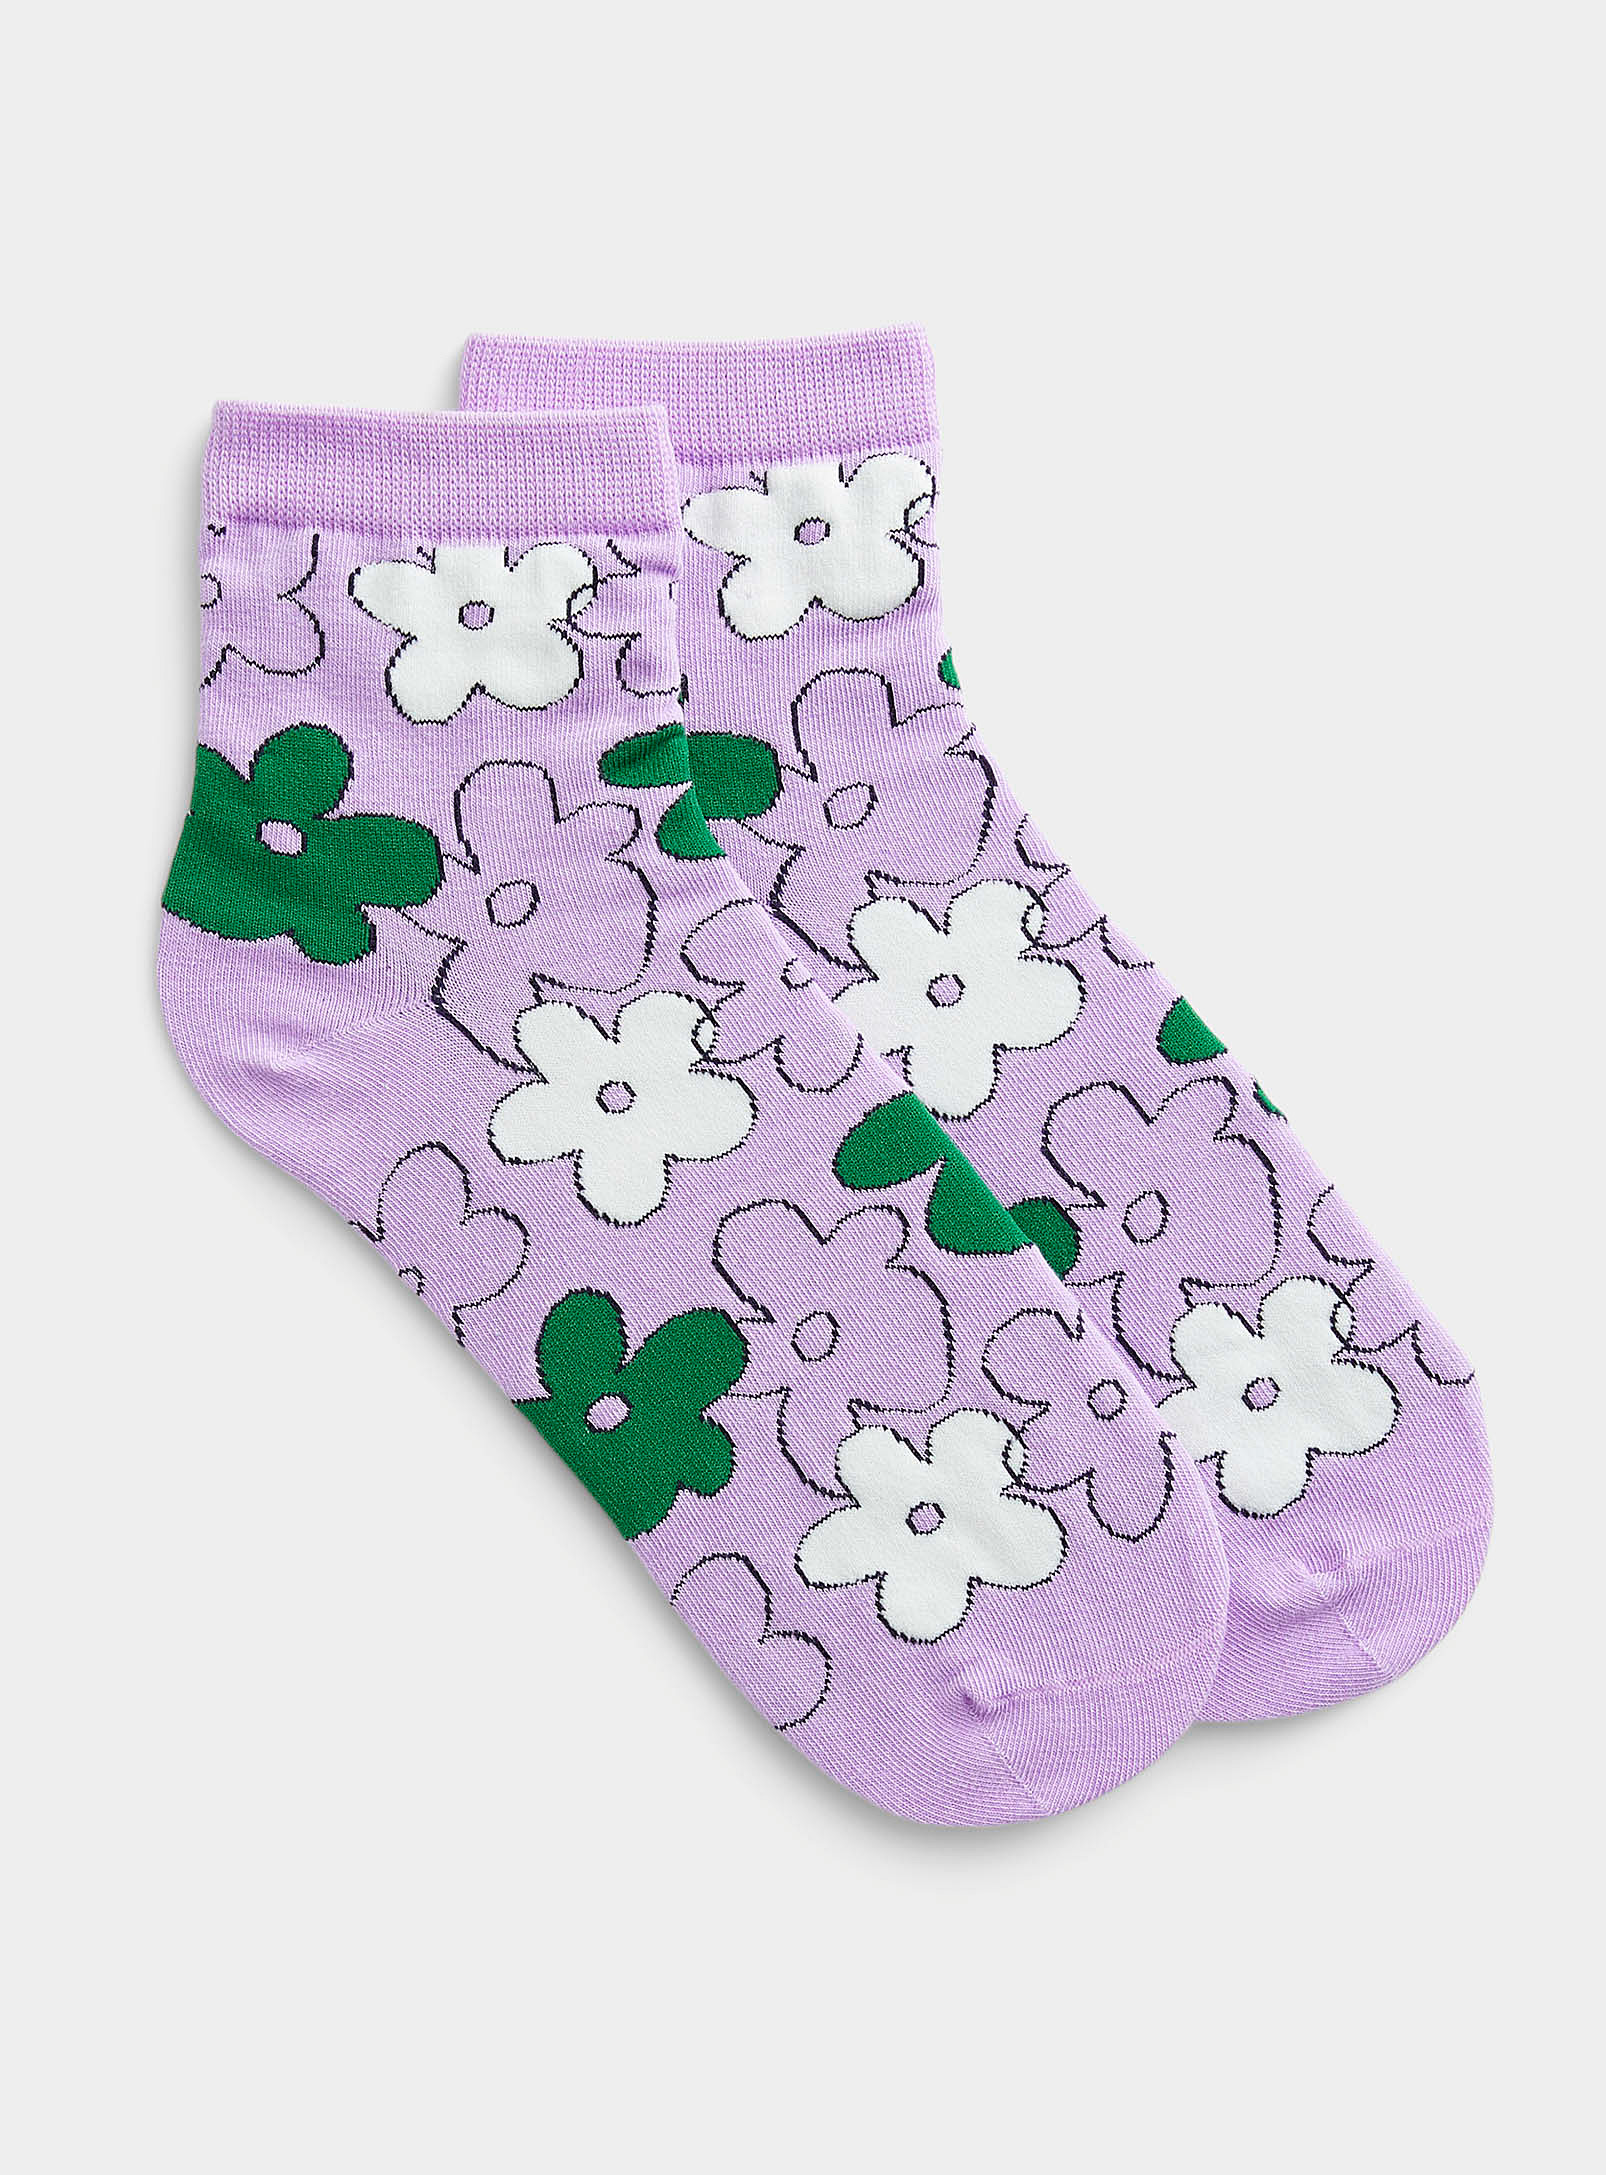 Simons - Women's Drawn flower socks